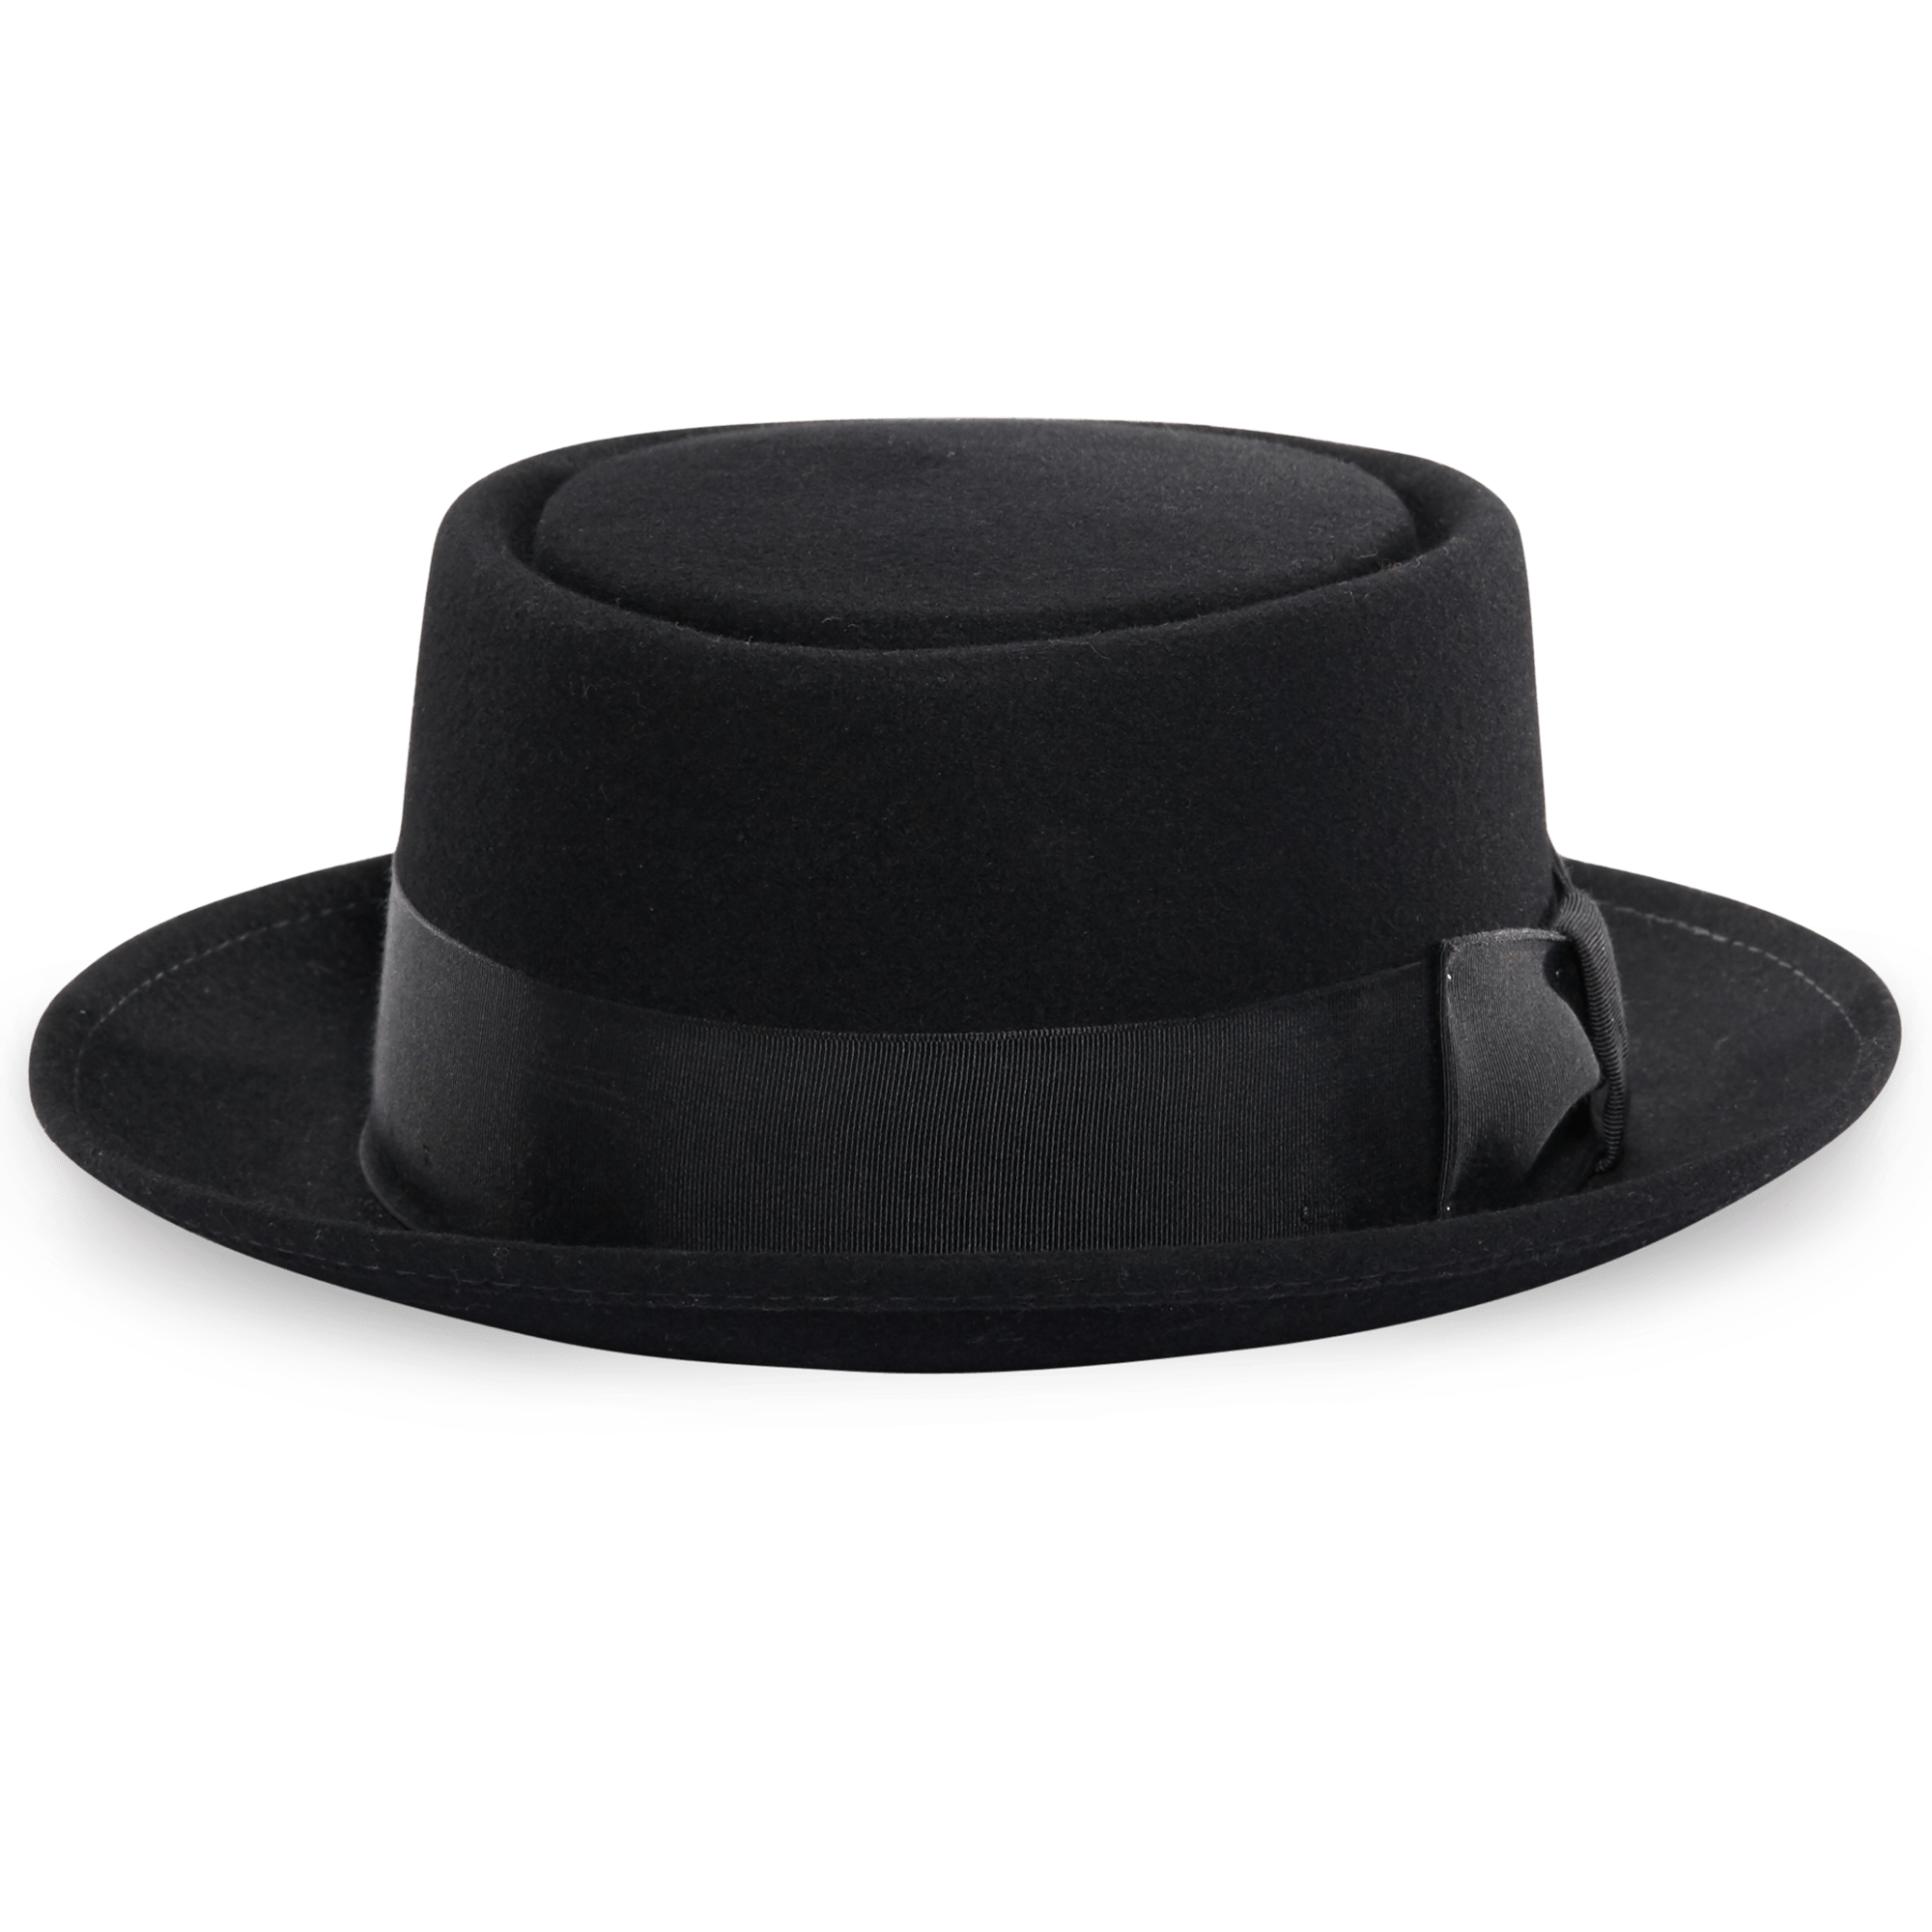 Black Bowler Hat Free PNG Image